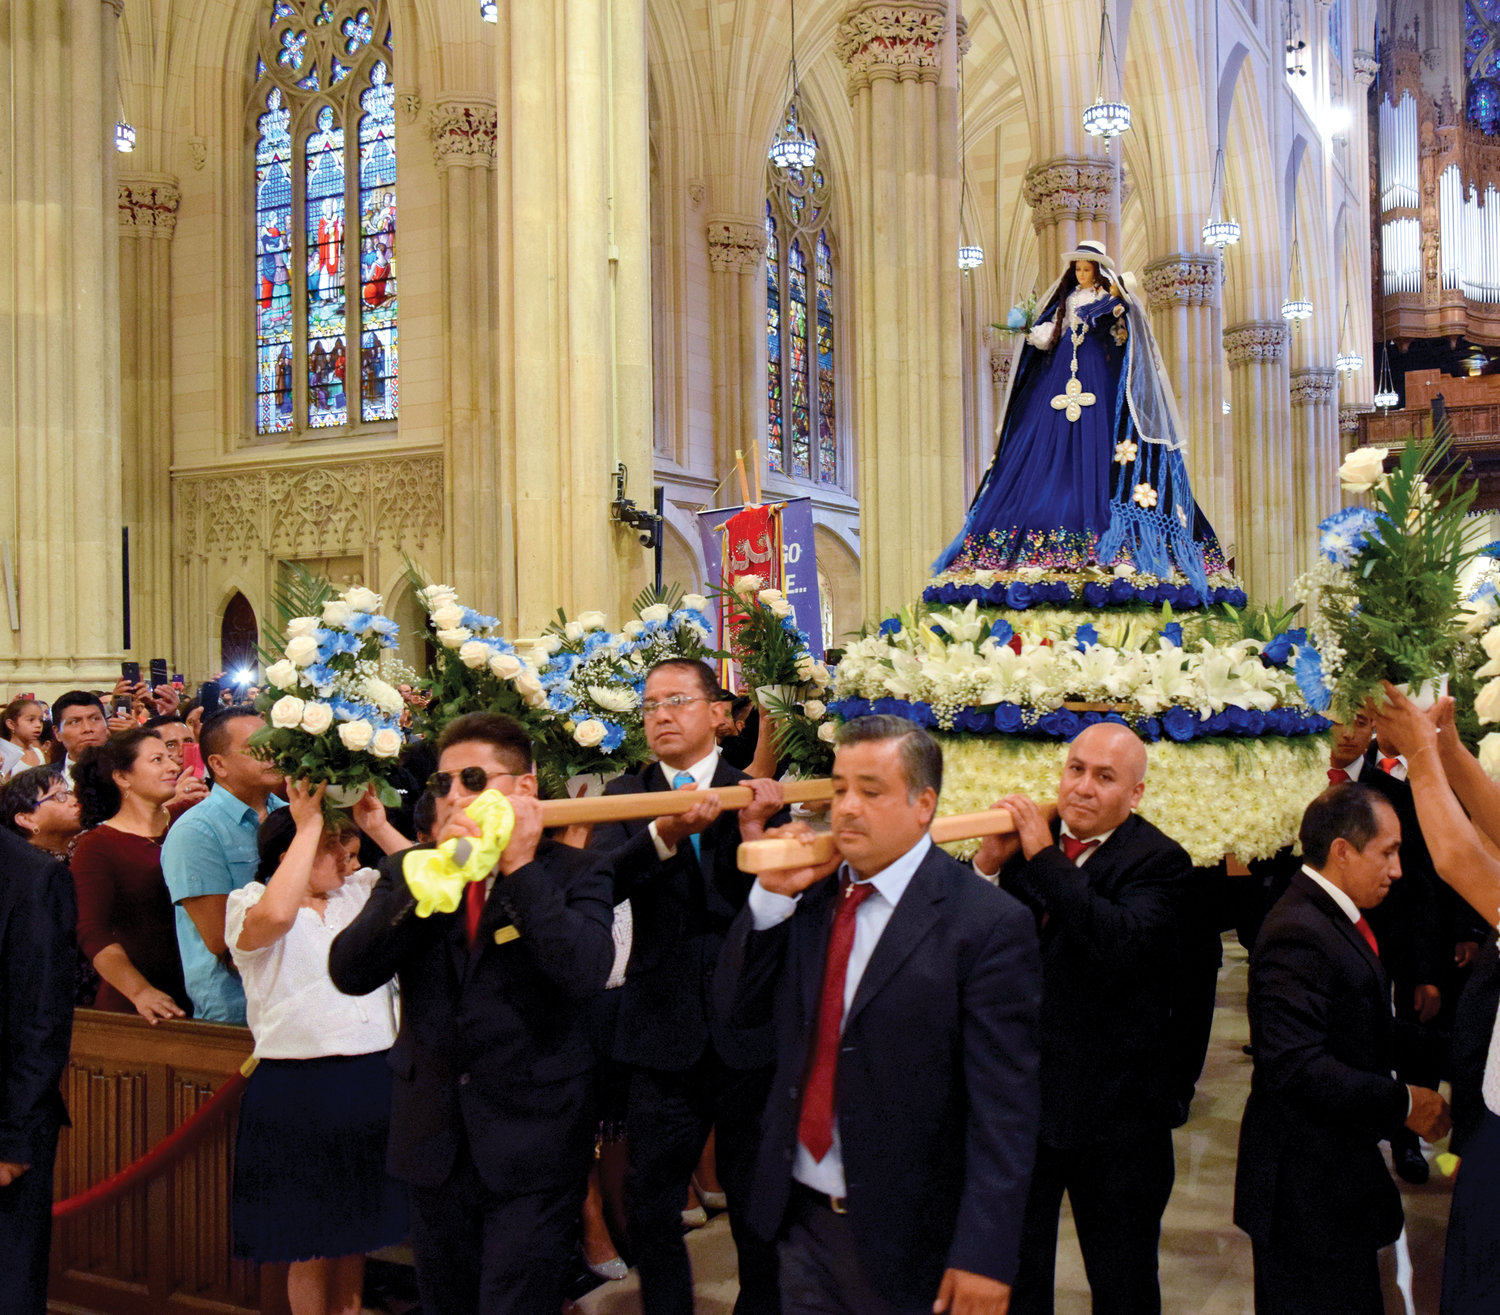 FE Y PATRIA—La estatua nacional de Nuestra Señora de El Cisne es cargada en 2019 durante la misa anual en la Catedral de San Patricio honrando a la patrona de Ecuador. La misa de este año está programada para domingo, 26 de septiembre a las 4 p.m. El cardenal Dolan servirá como celebrante principal.